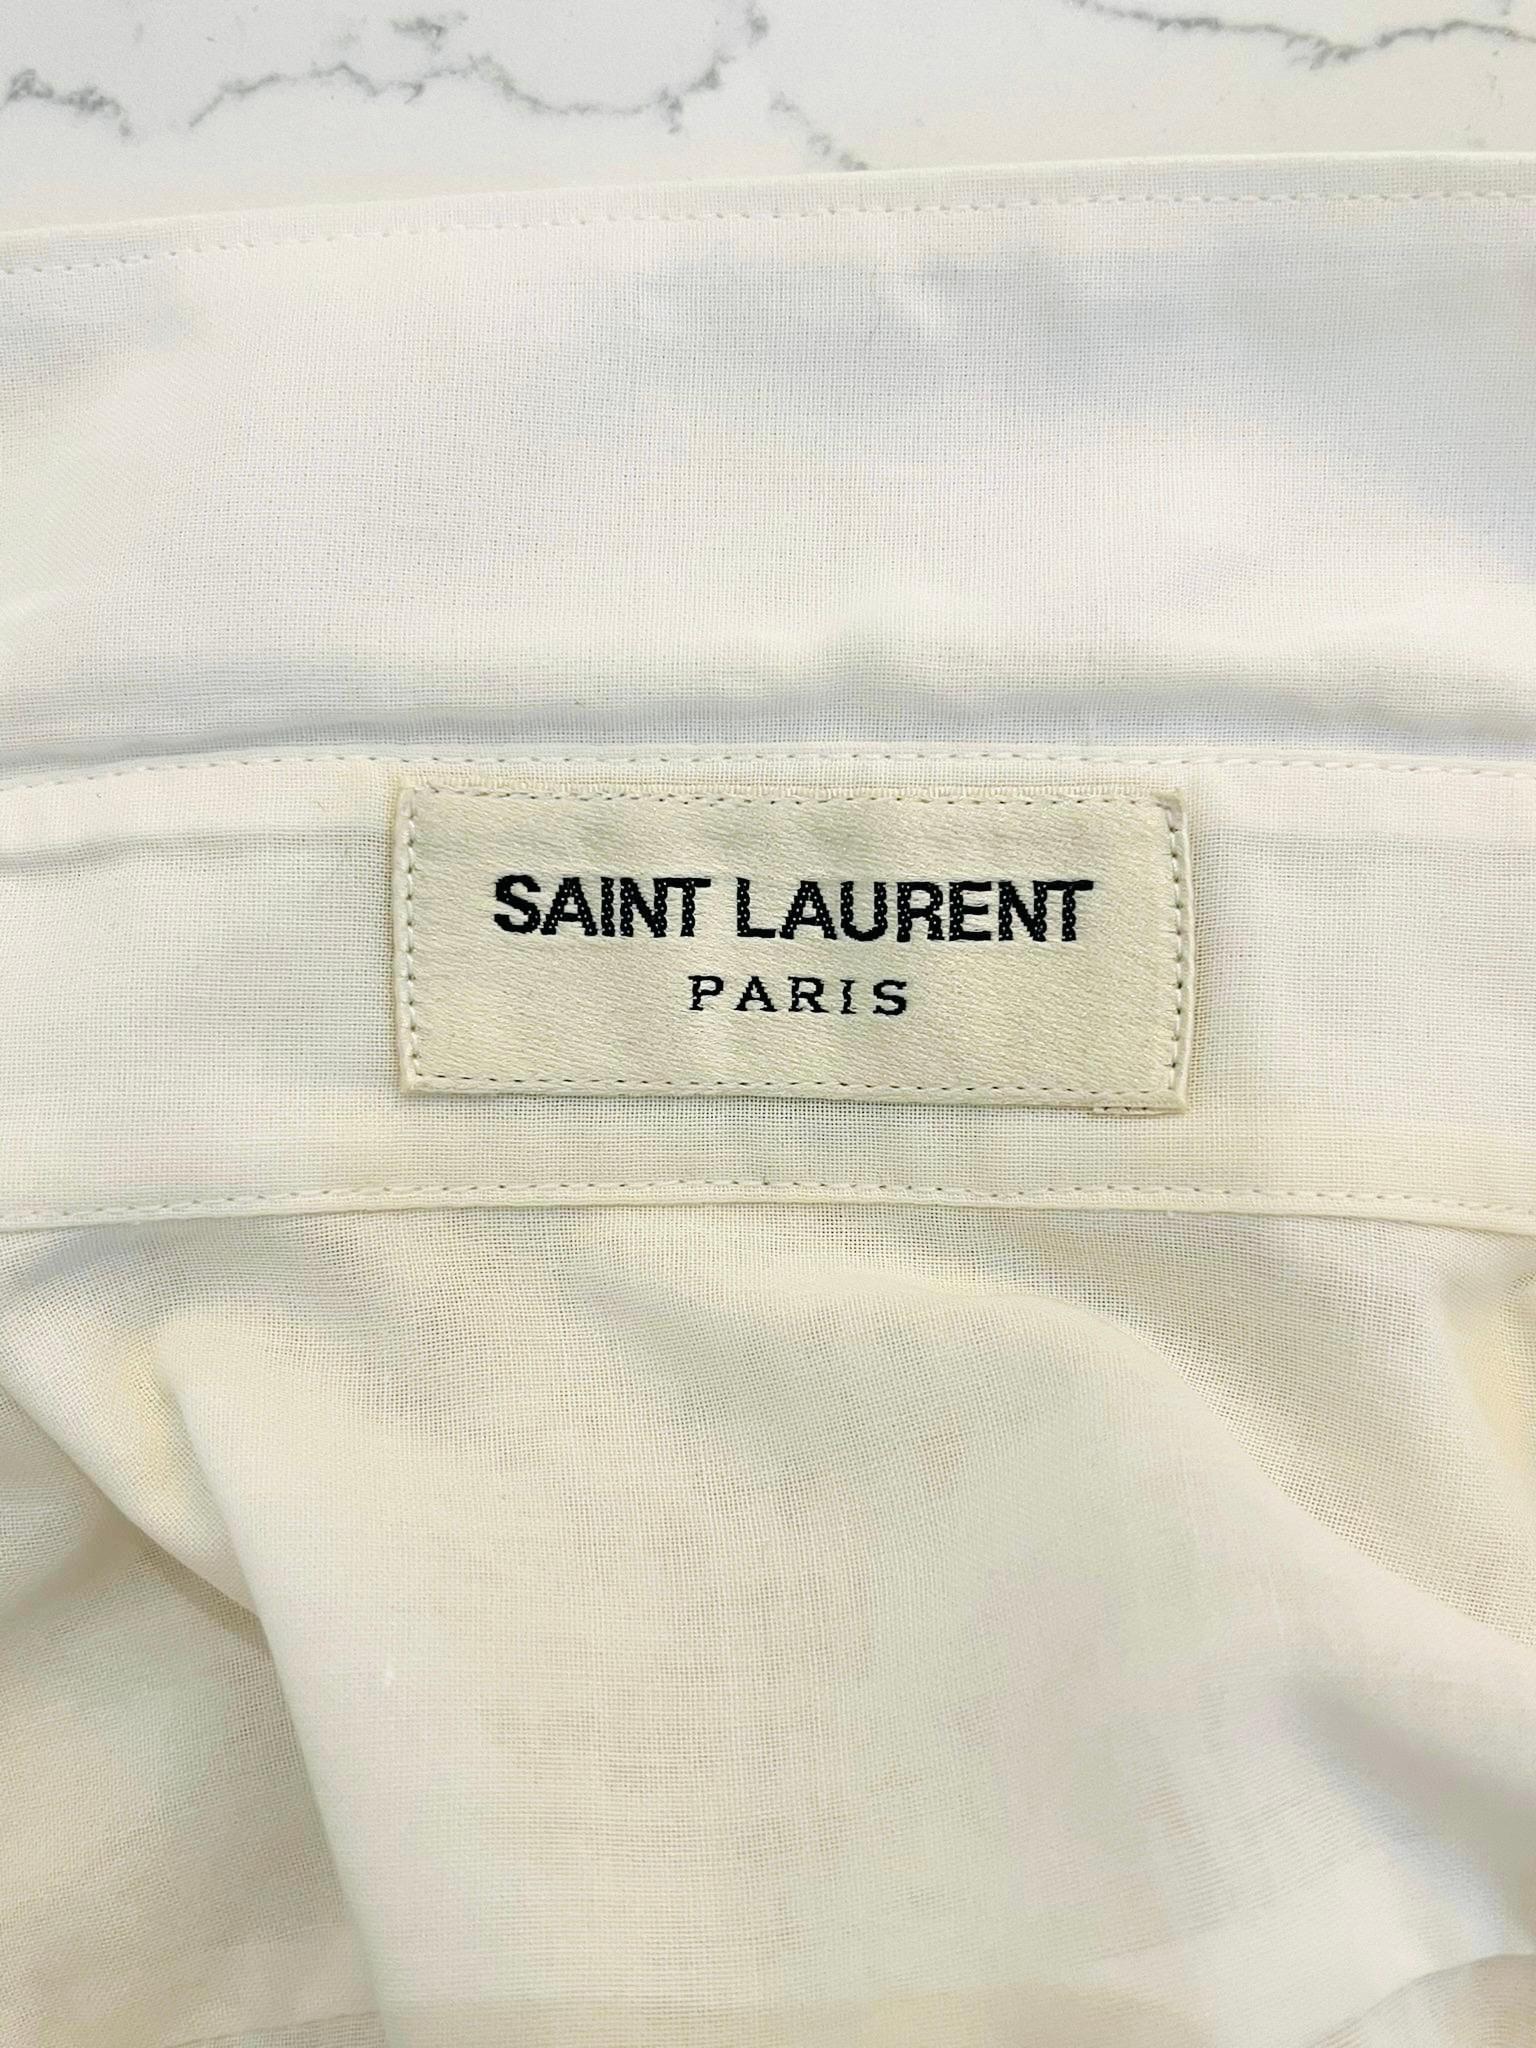 Saint Laurent Cotton Shirt For Sale 1